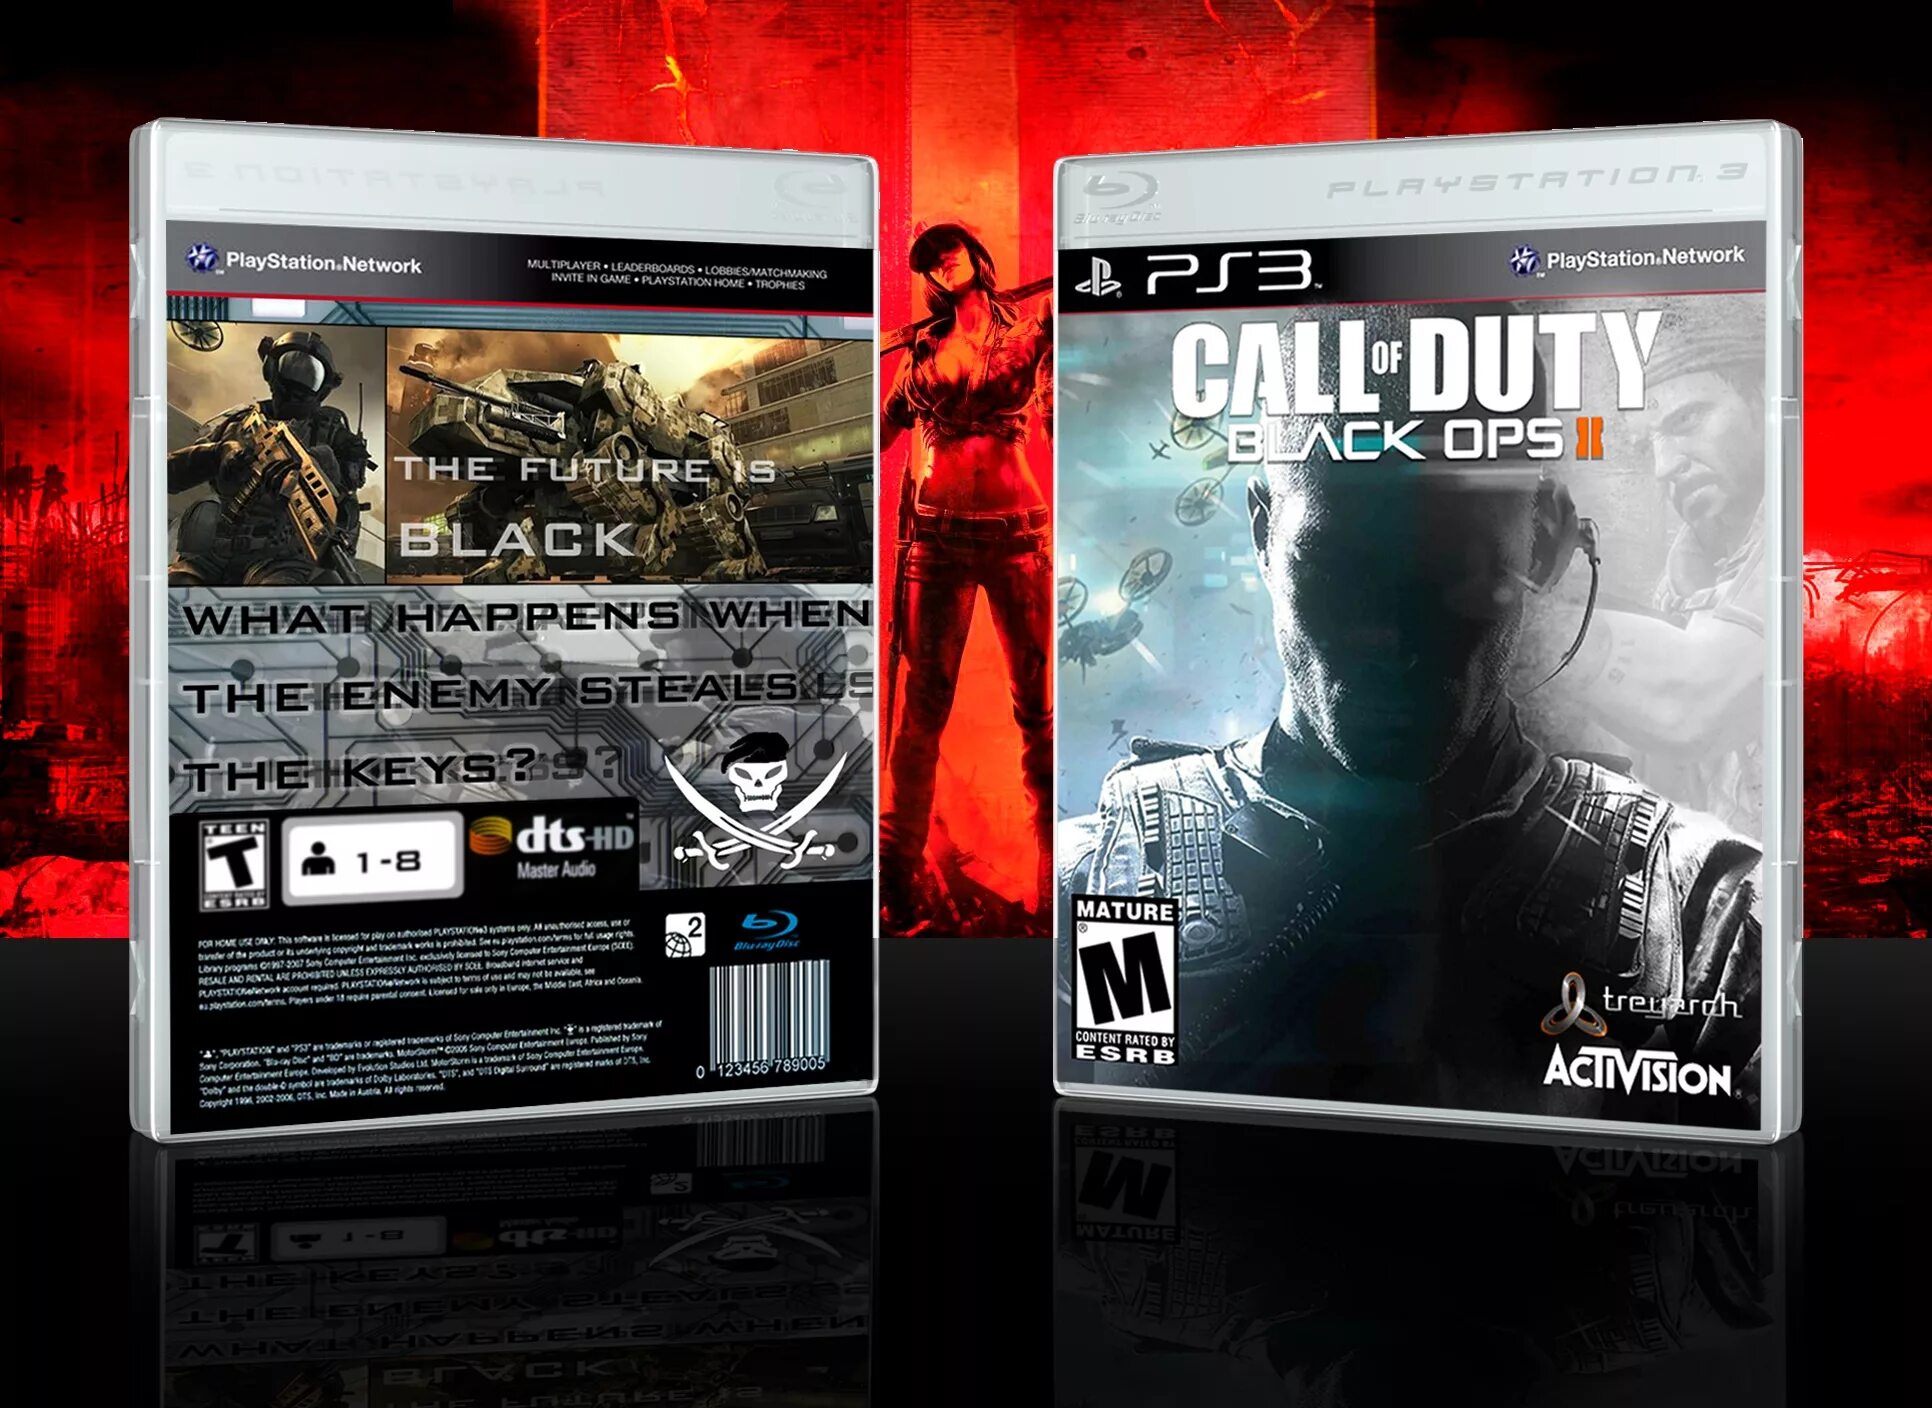 Black ops ps3. Call of Duty Black ops 3 ps3 диск. Блэк ОПС 2 пс3. Cod Black ops ps3. Playstation 2 прохождения